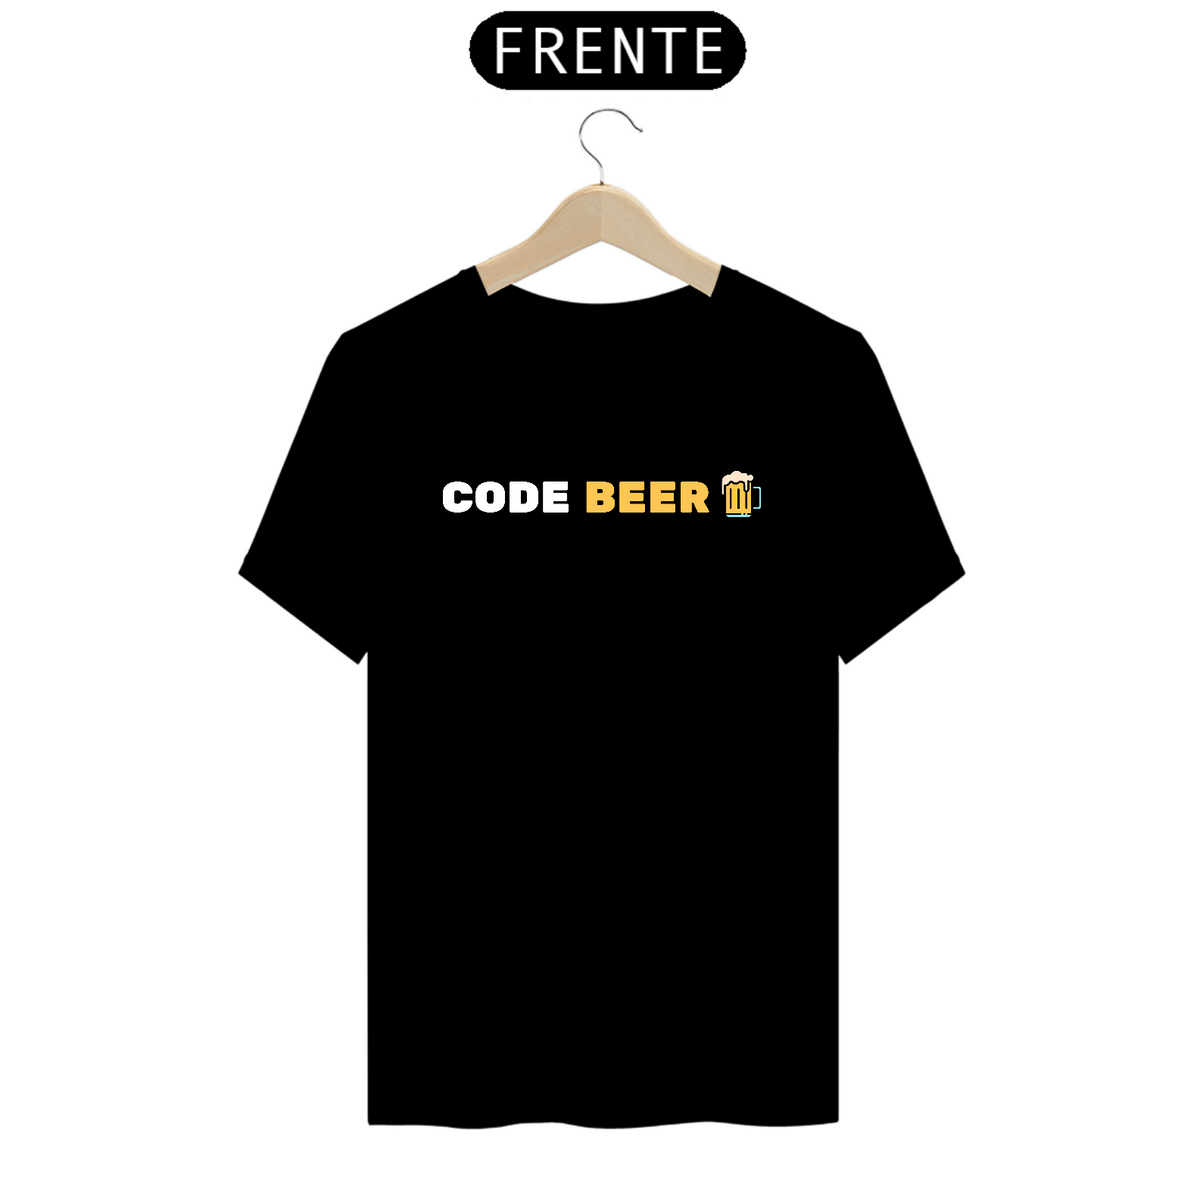 Nome do produto: Code Beer